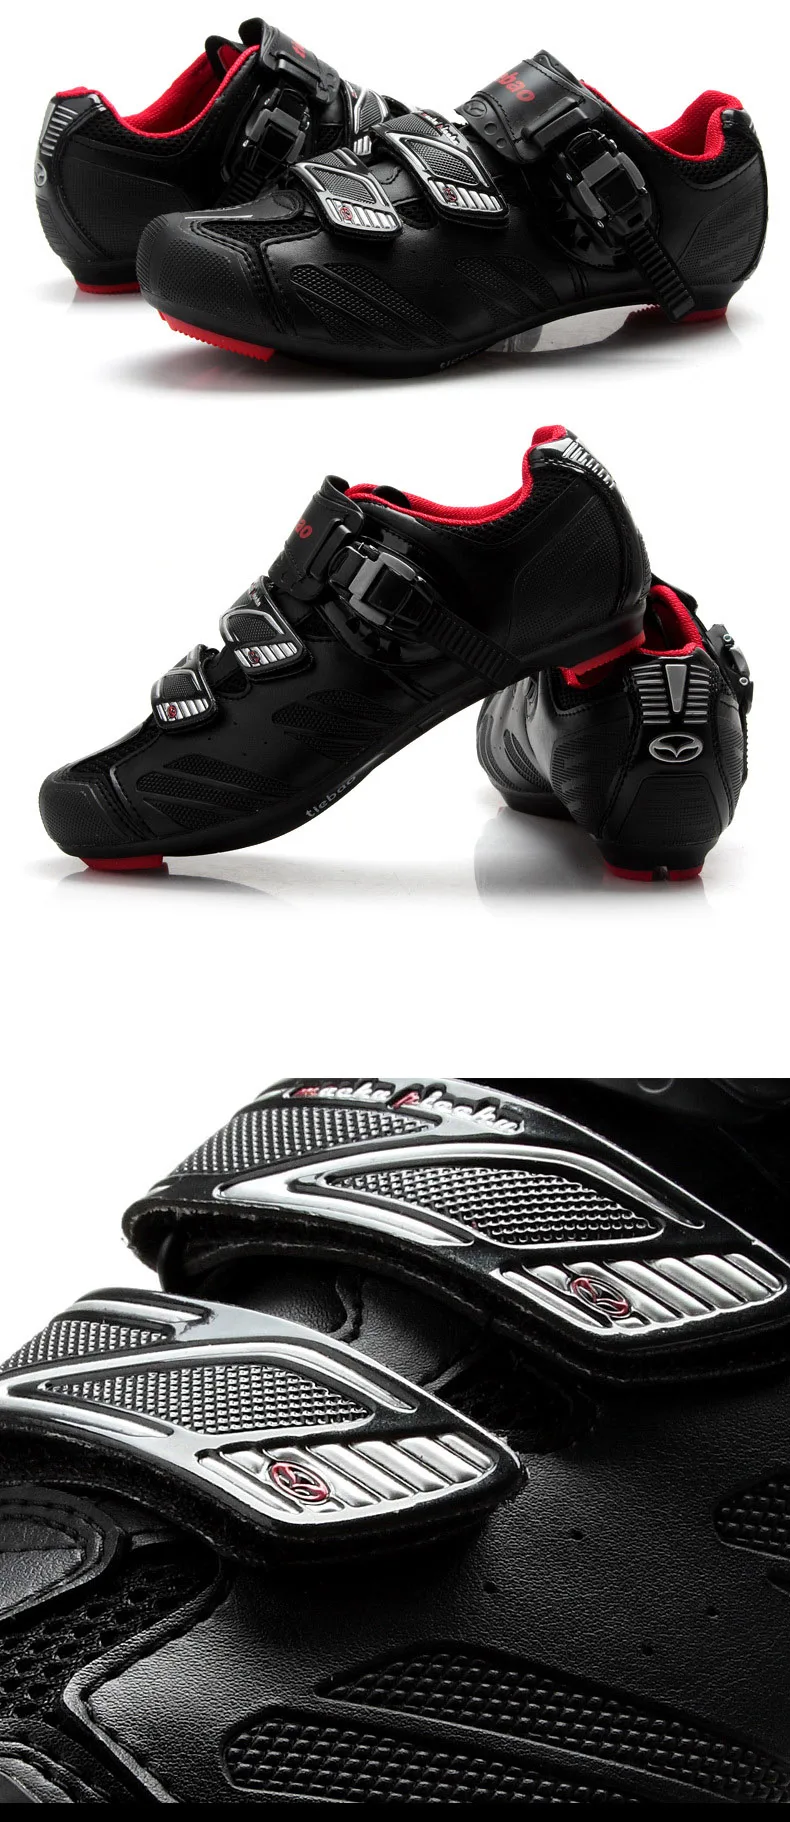 Tiebao профессиональные Велоспорт обувь Для мужчин Профессиональный шоссе, дорога велосипедная обувь Нескользящая дышащая велосипедная обувь на высоких каблуках; Sapatos de ciclismo